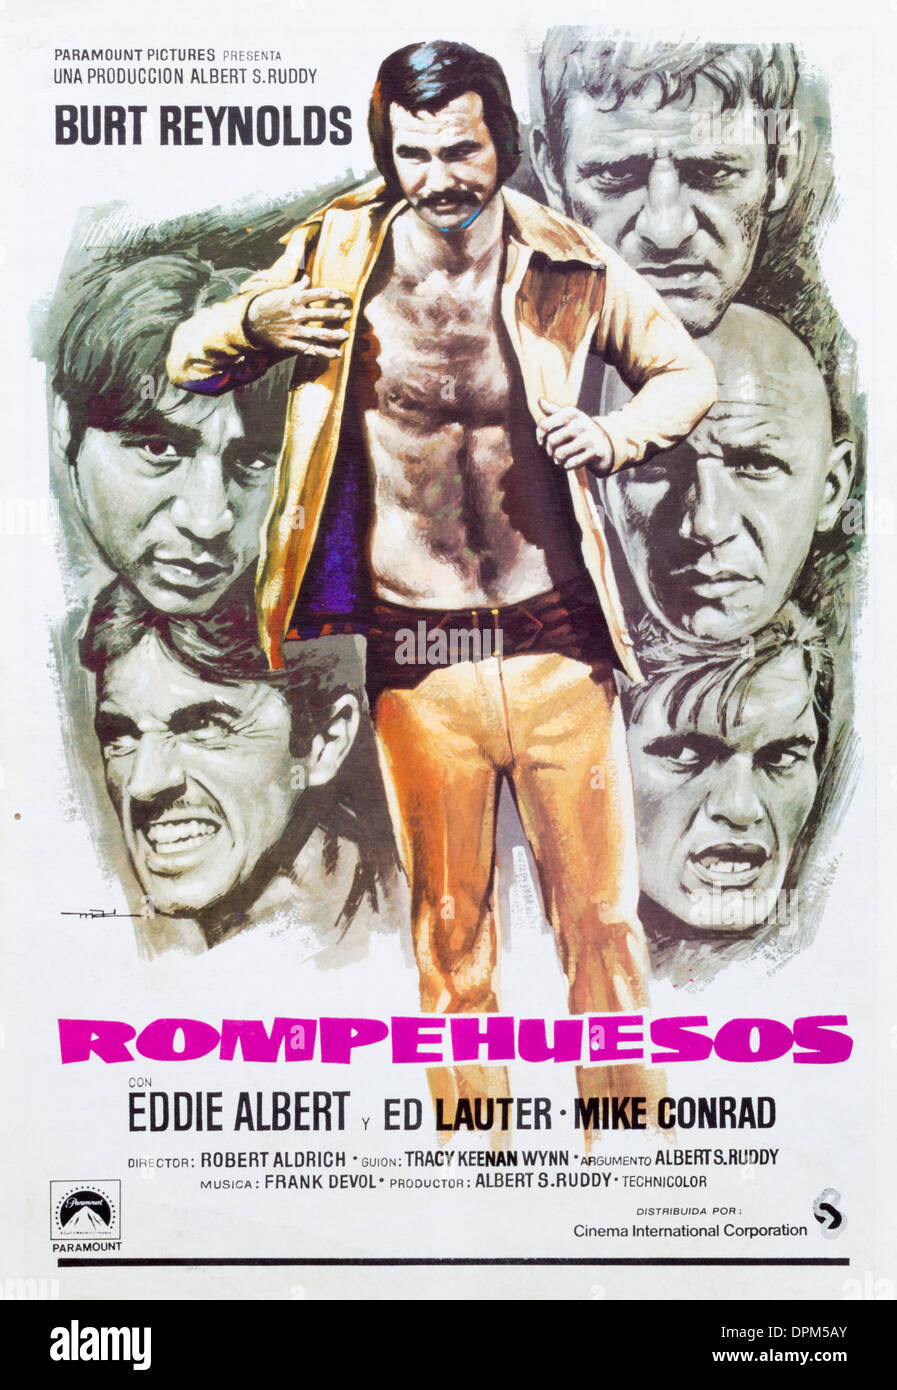 Affiche de film espagnol pour Burt Reynolds film 'Triage' le plus long Rompehuesos ( ). Banque D'Images